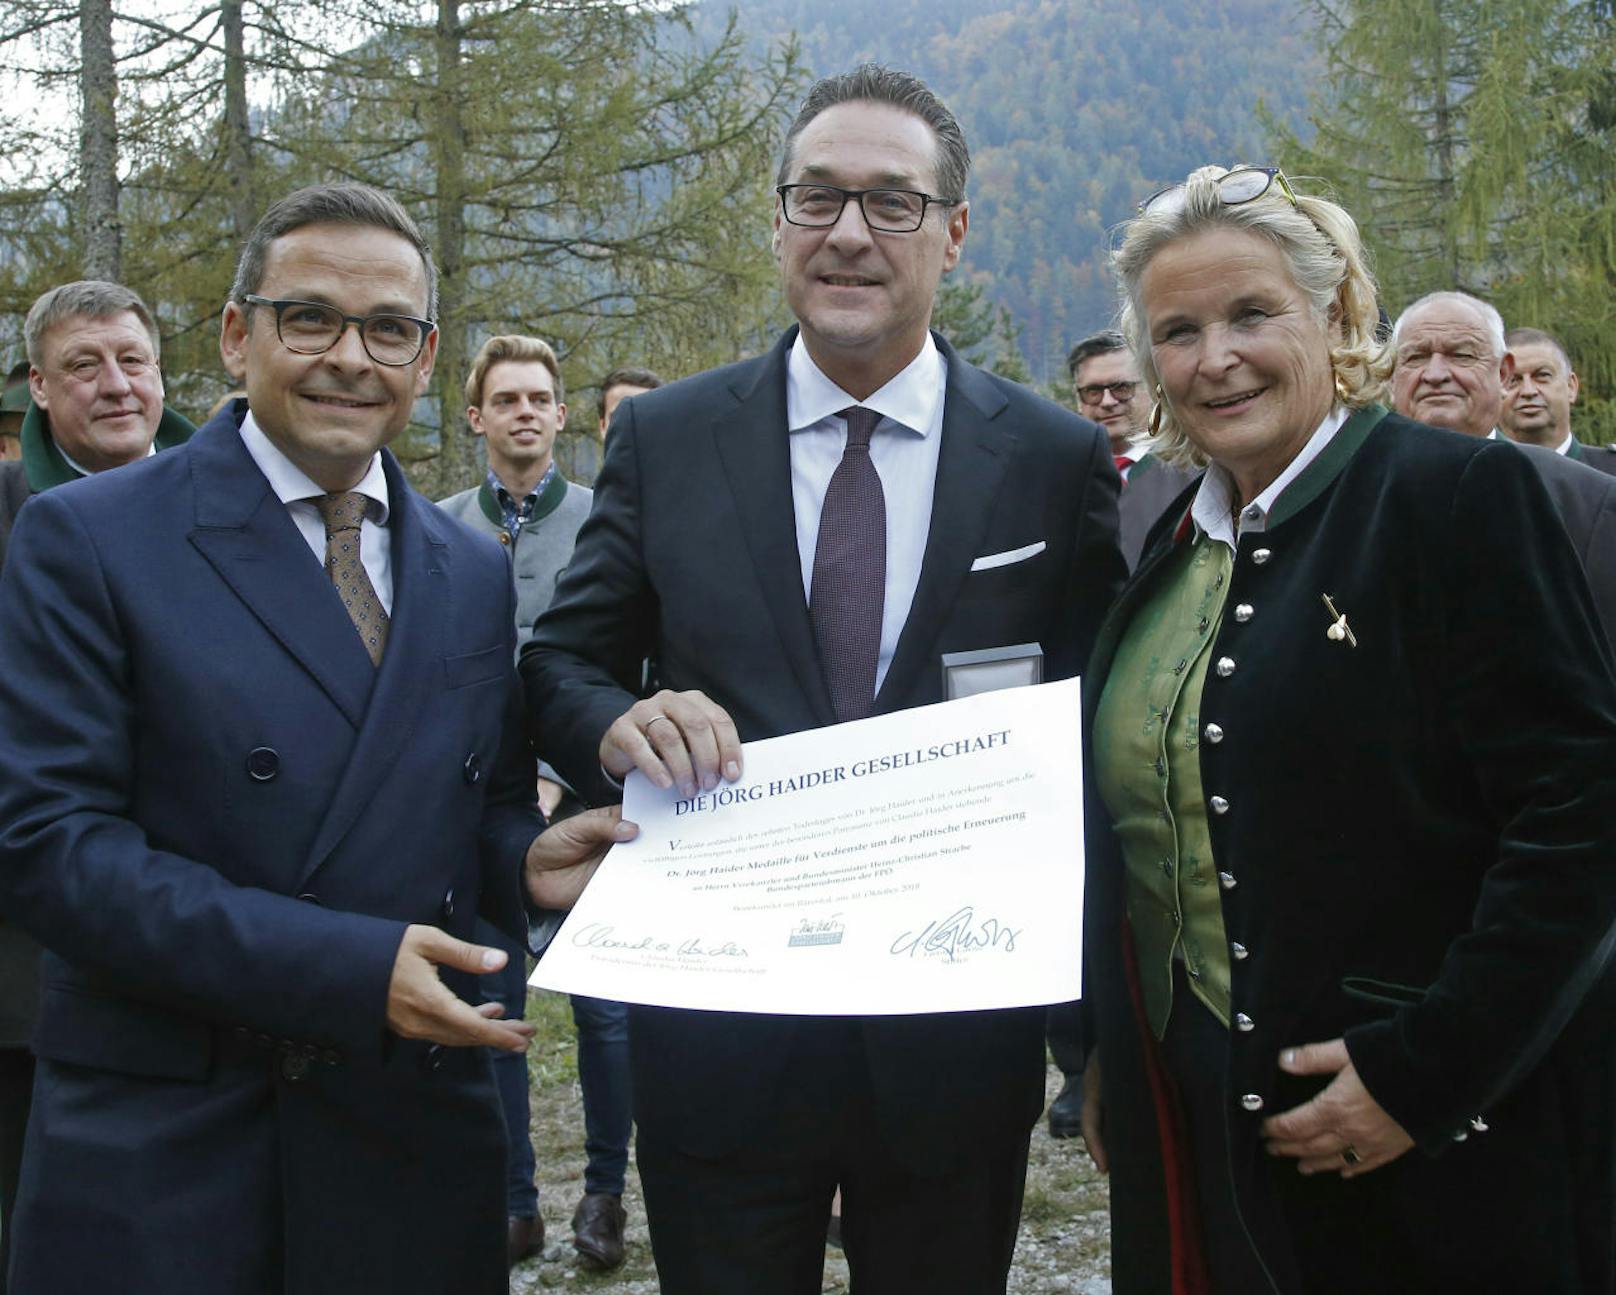 Überreichung der Jörg-Haider-Medaille an FPÖ-Obmann Strache am 10. Oktober 2018, in Feistritz. Im Bild: (v.l.) Gerald Grosz und FPÖ-Chef Heinz-Christian Strache mit Claudia Haider.